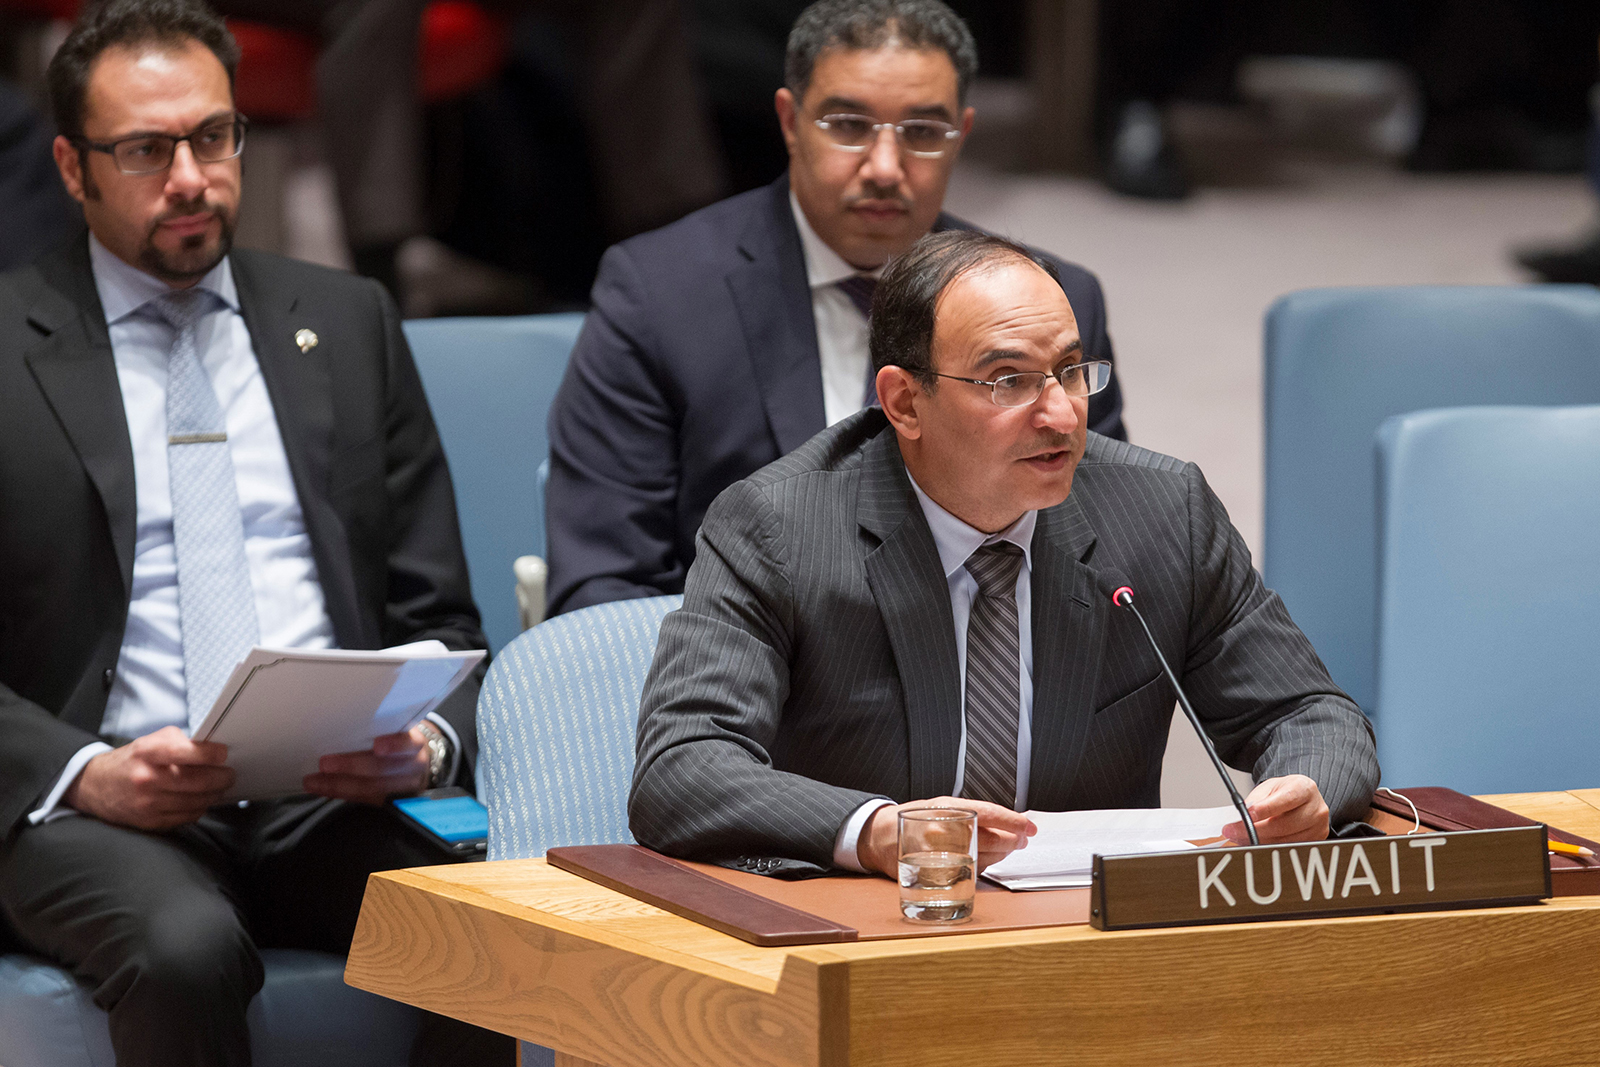 المندوب الدائم لدولة الكويت لدى الامم المتحدة السفير منصور عياد العتيبي